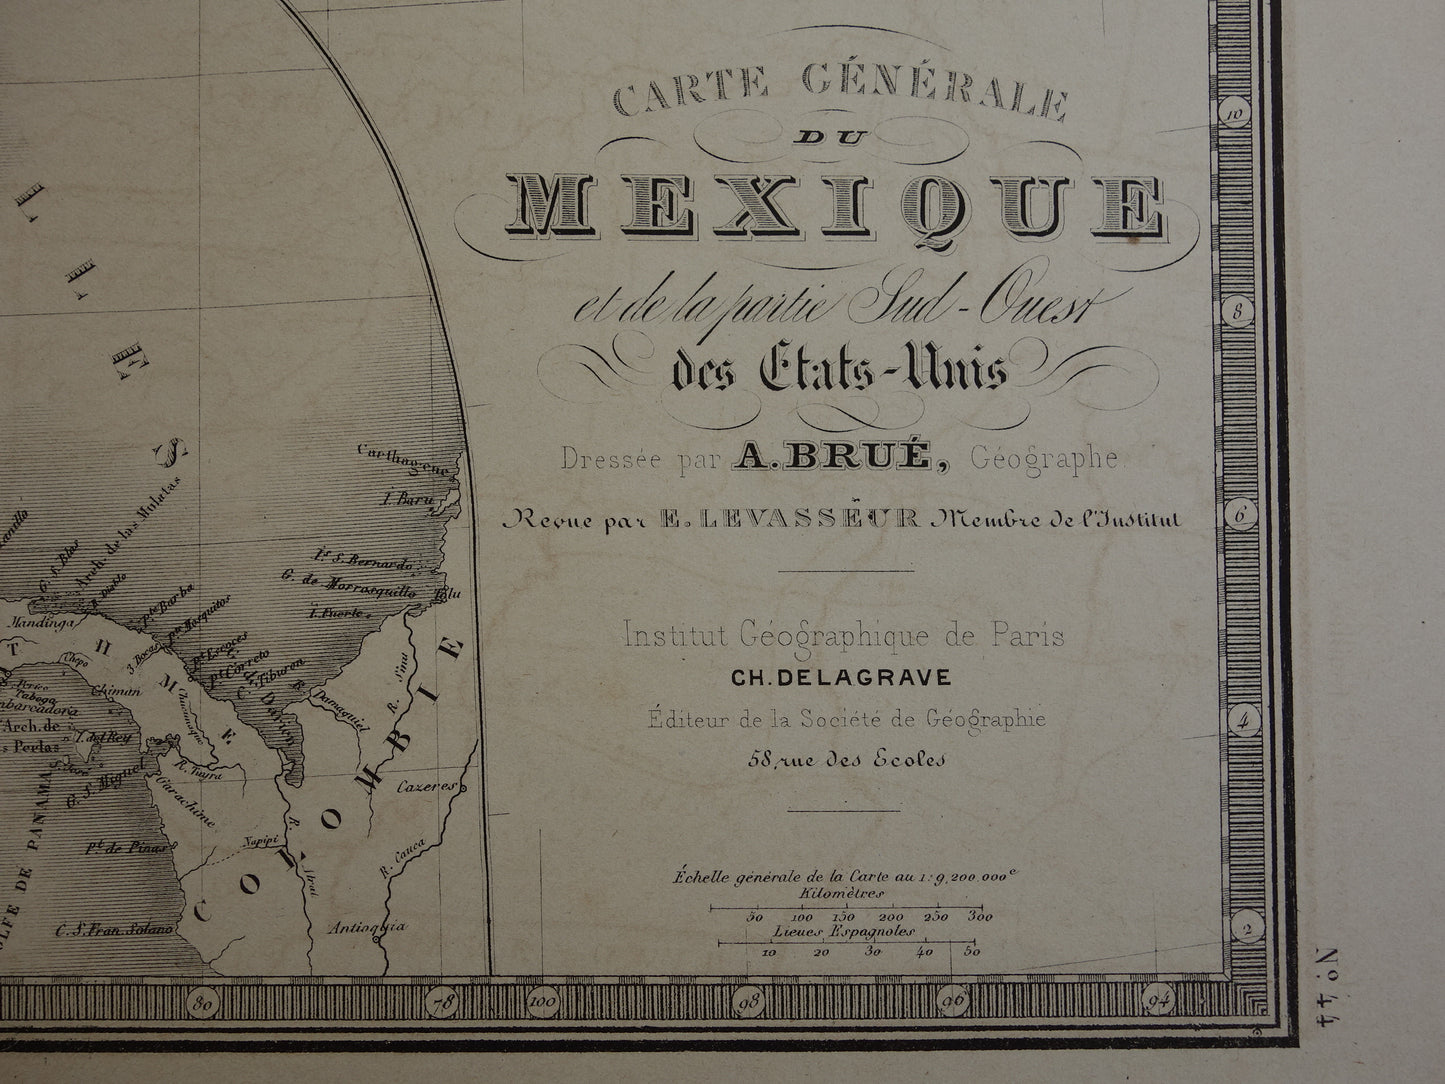 61 carte generale du Mexique et de la partie sud-ouest des etats-unis brue levasseur 1876